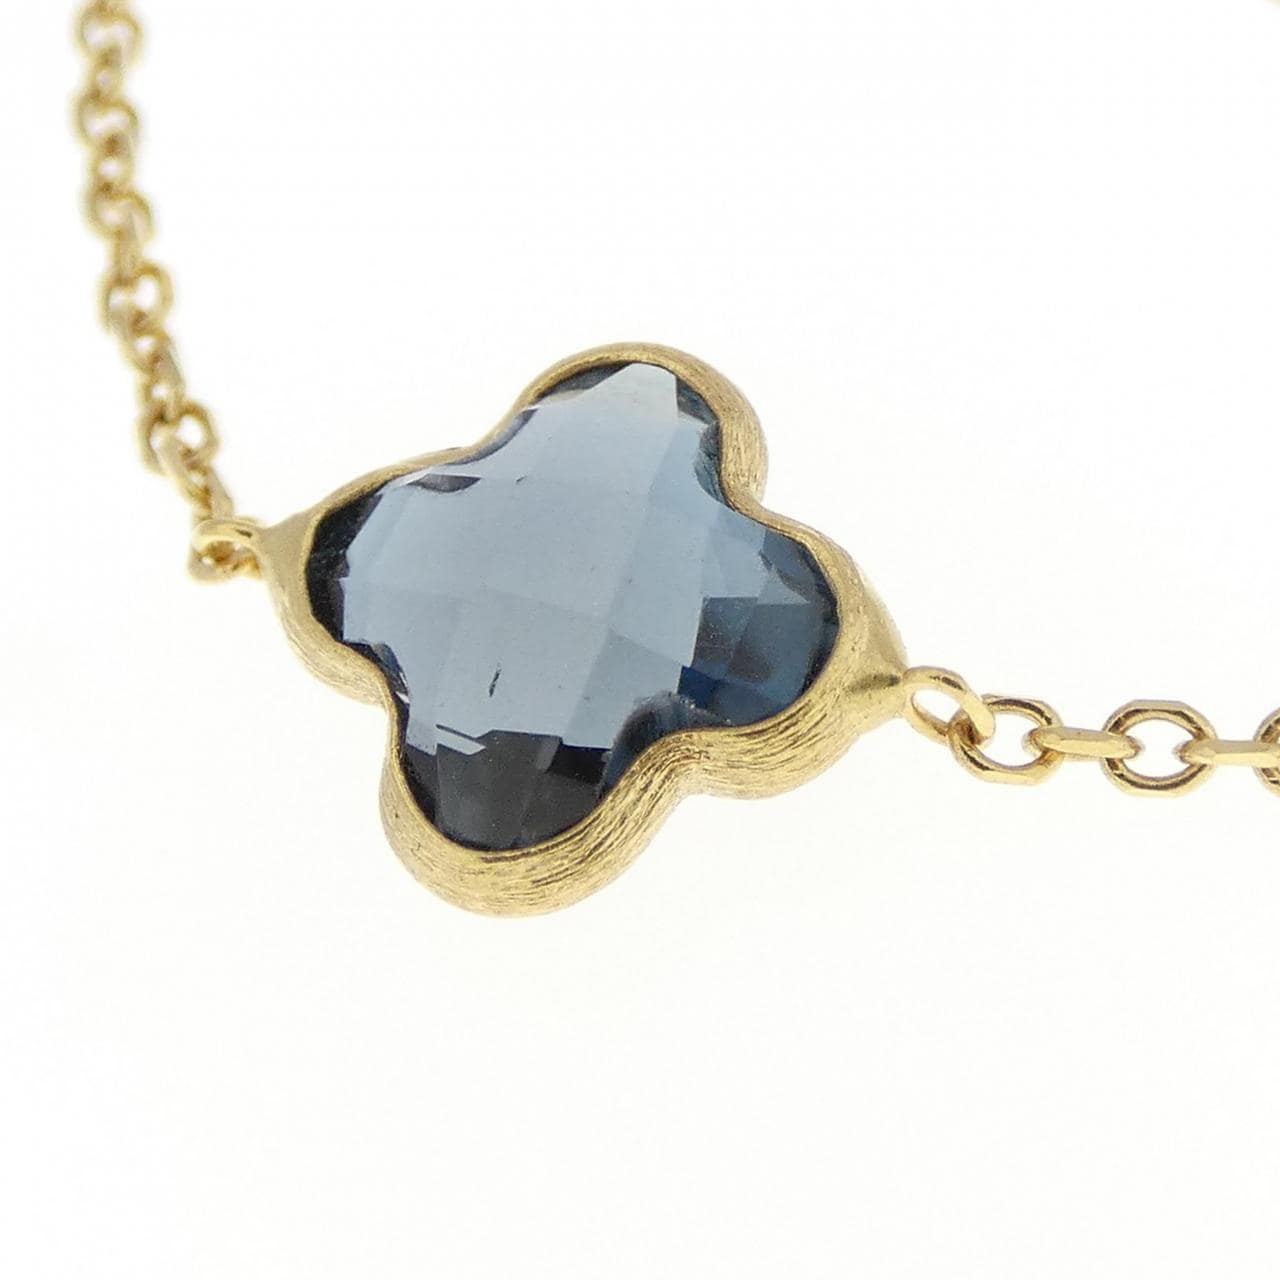 750YG blue Topaz necklace